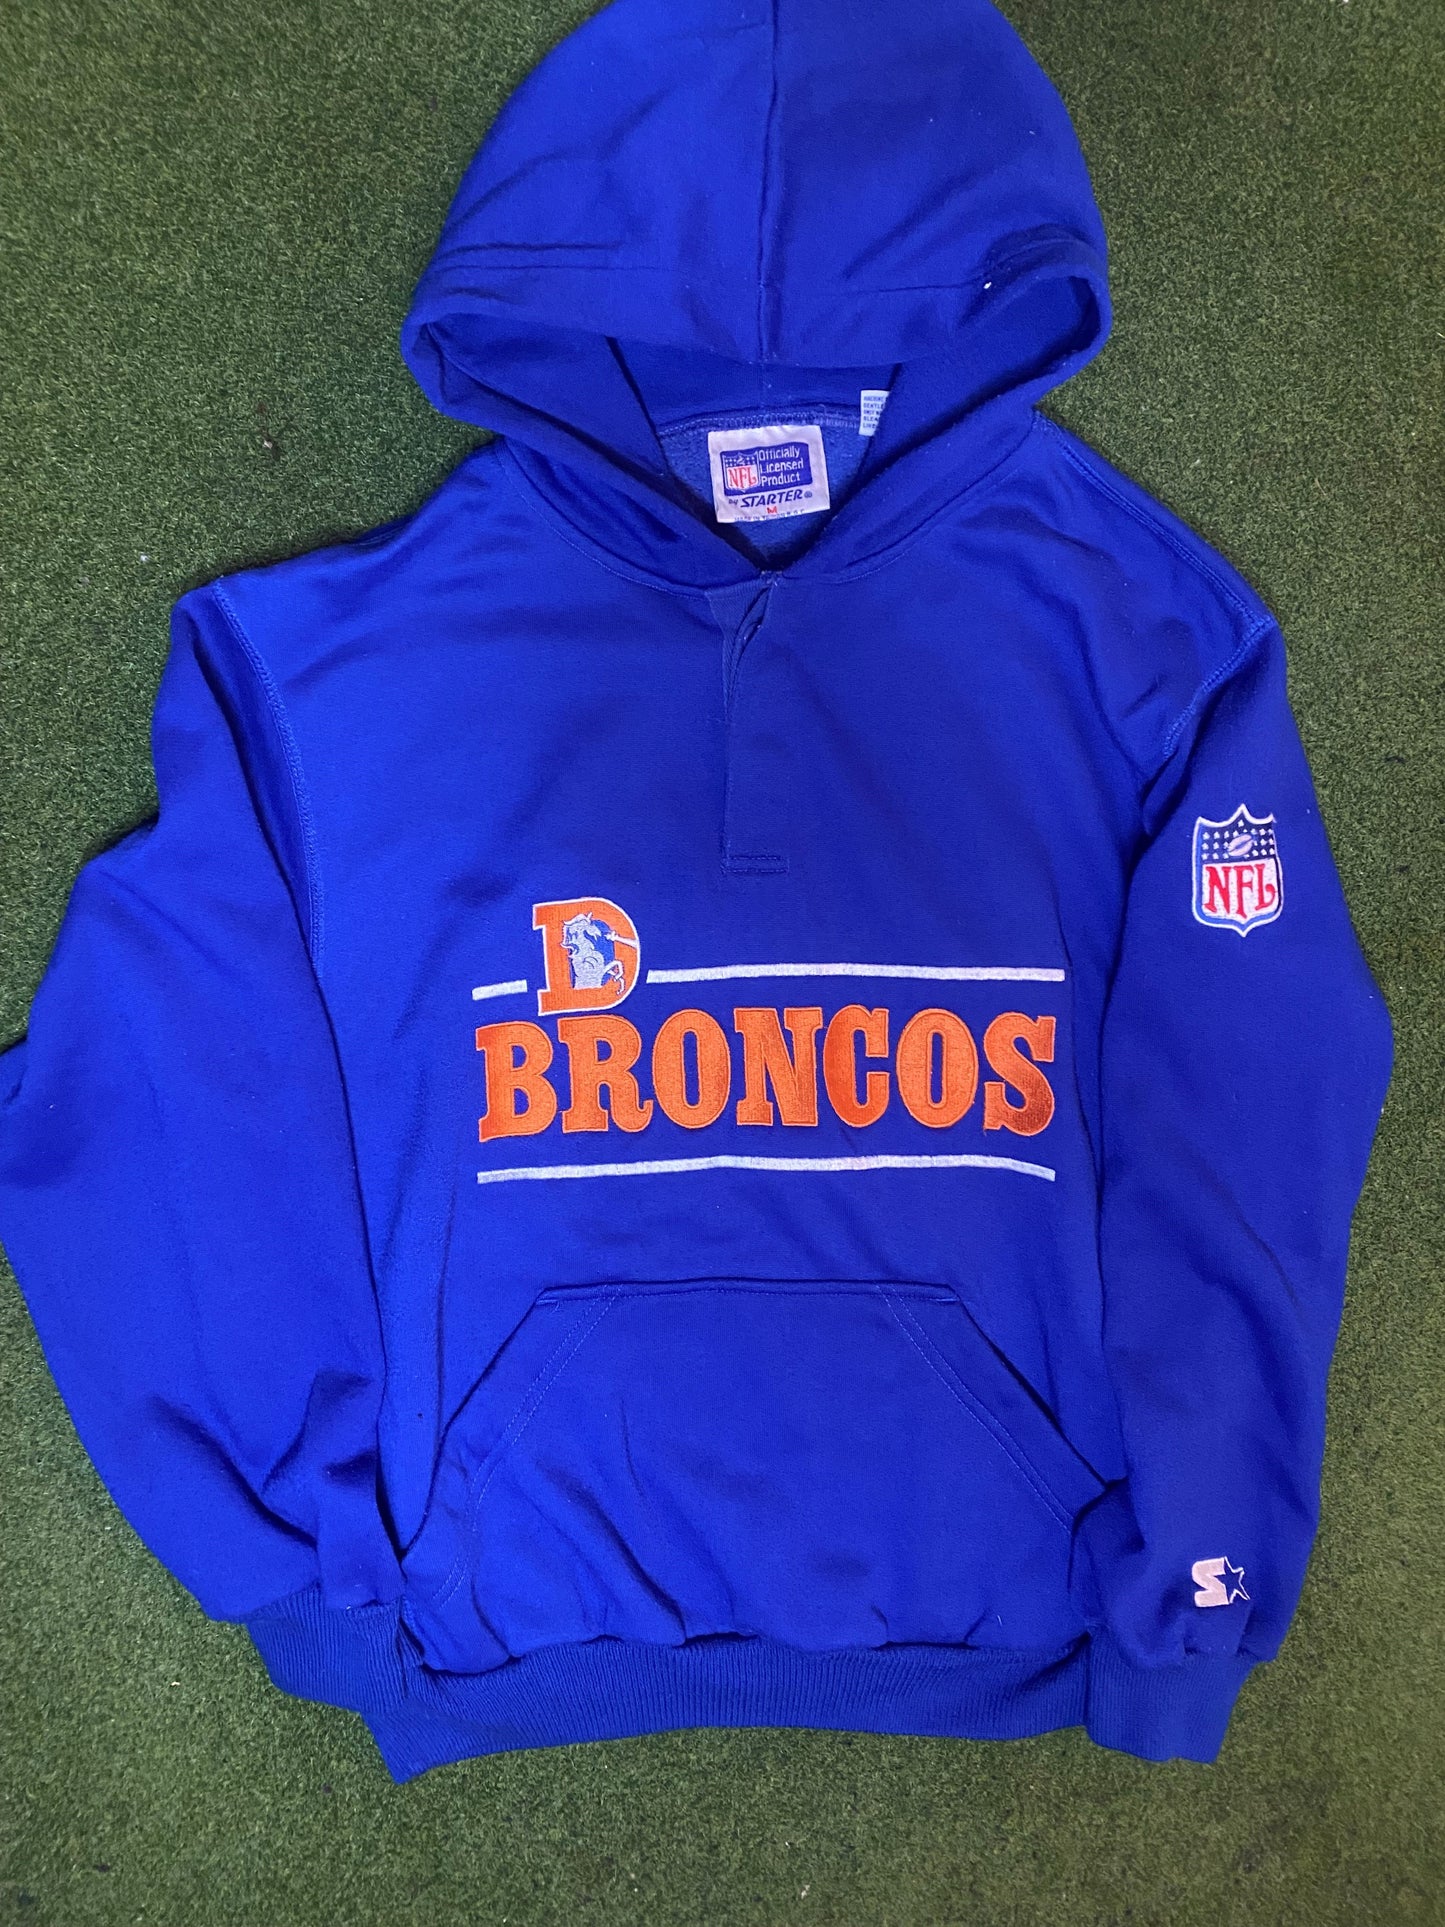 90s Denver Broncos - Vintage NFL Hoodie (Medium)